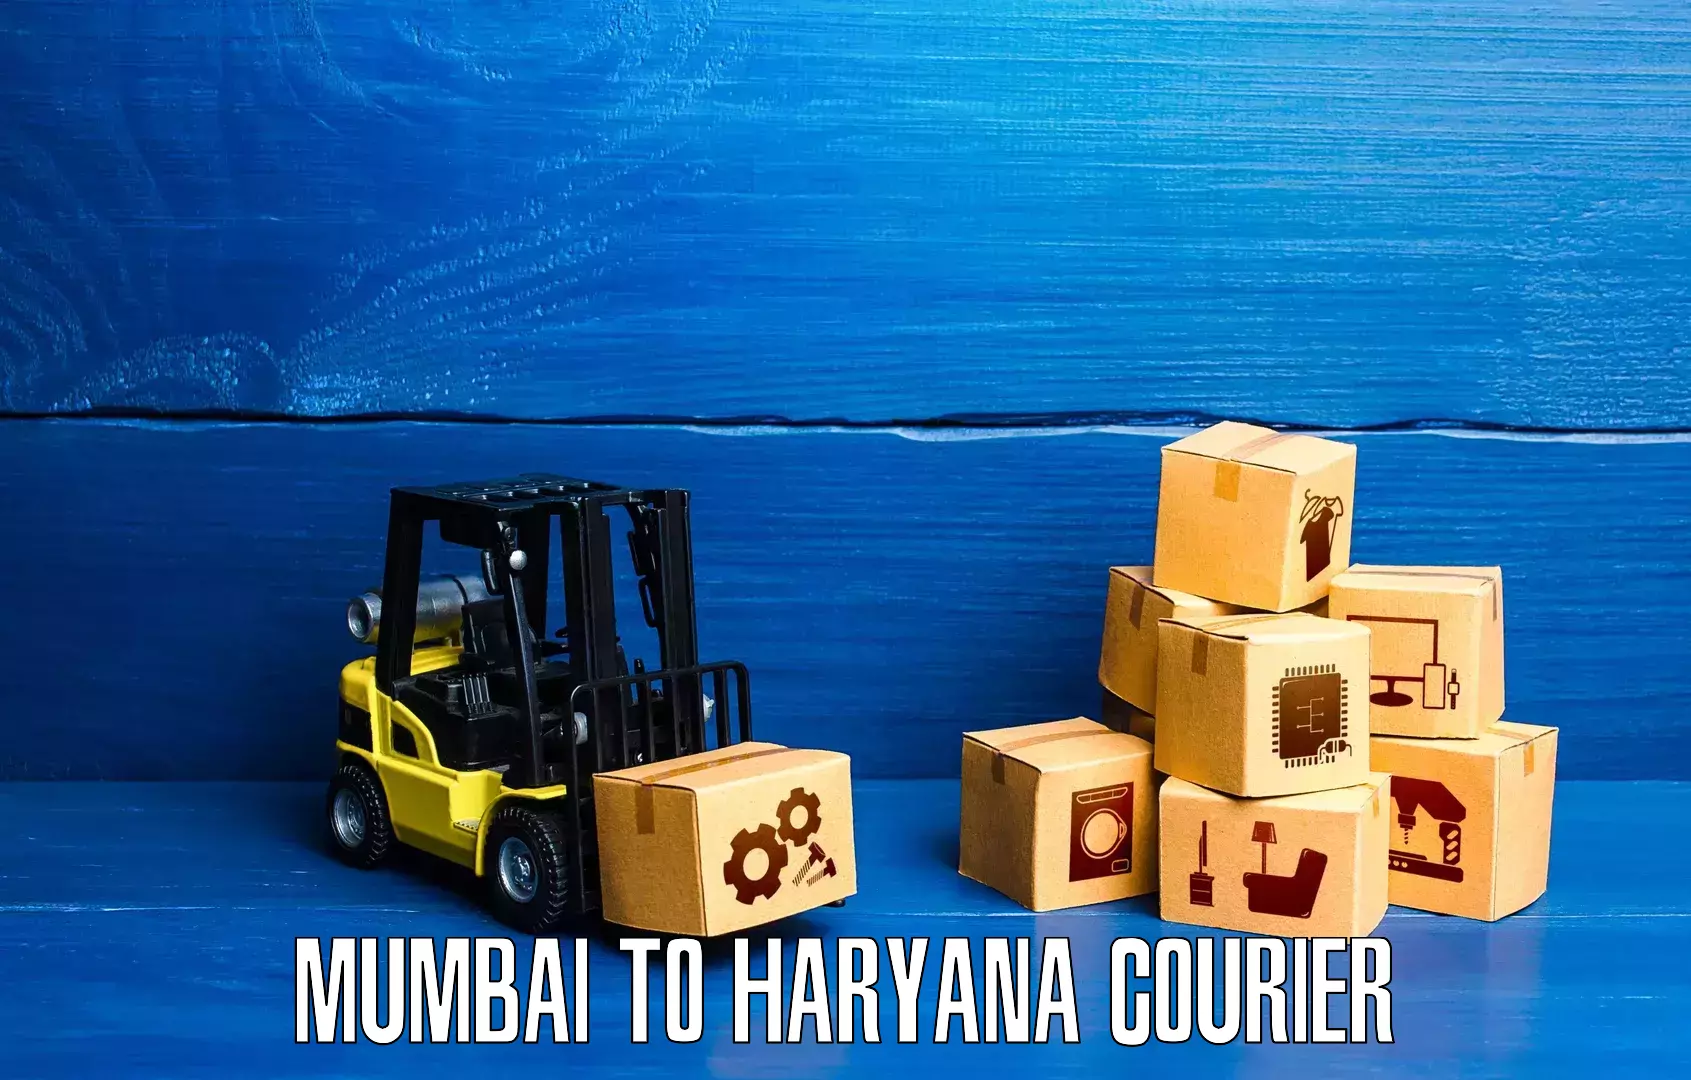 Express logistics in Mumbai to Haryana